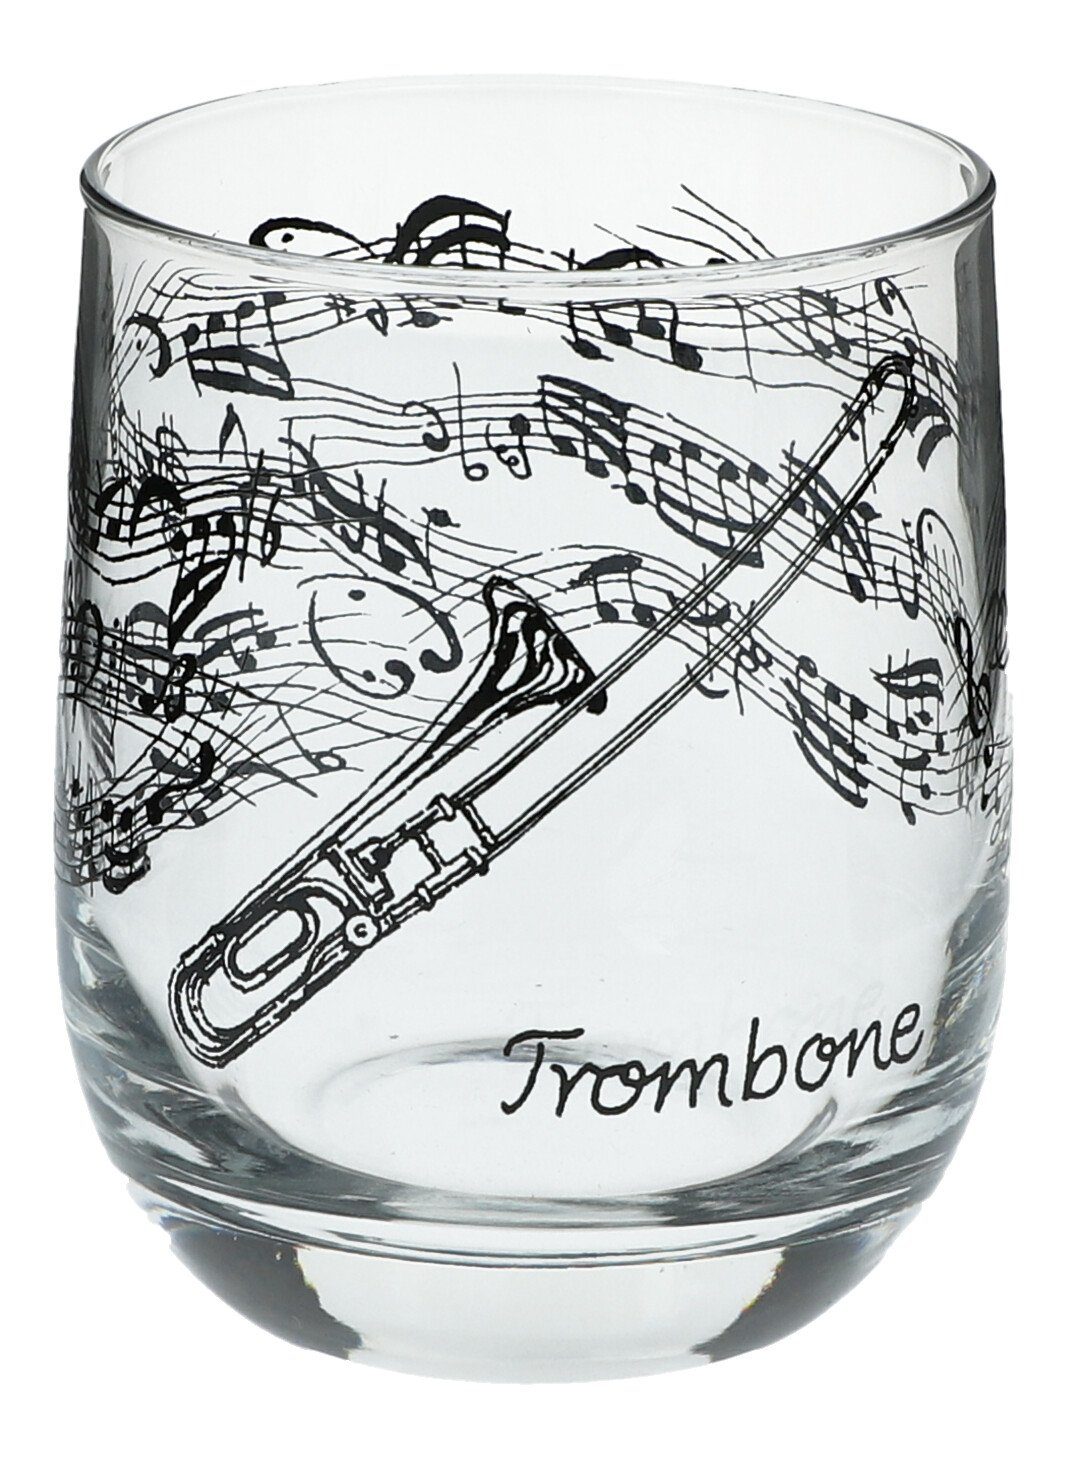 Musikboutique Glas, Trinkgefäß, bedruckt mit Posaunen-Motiv